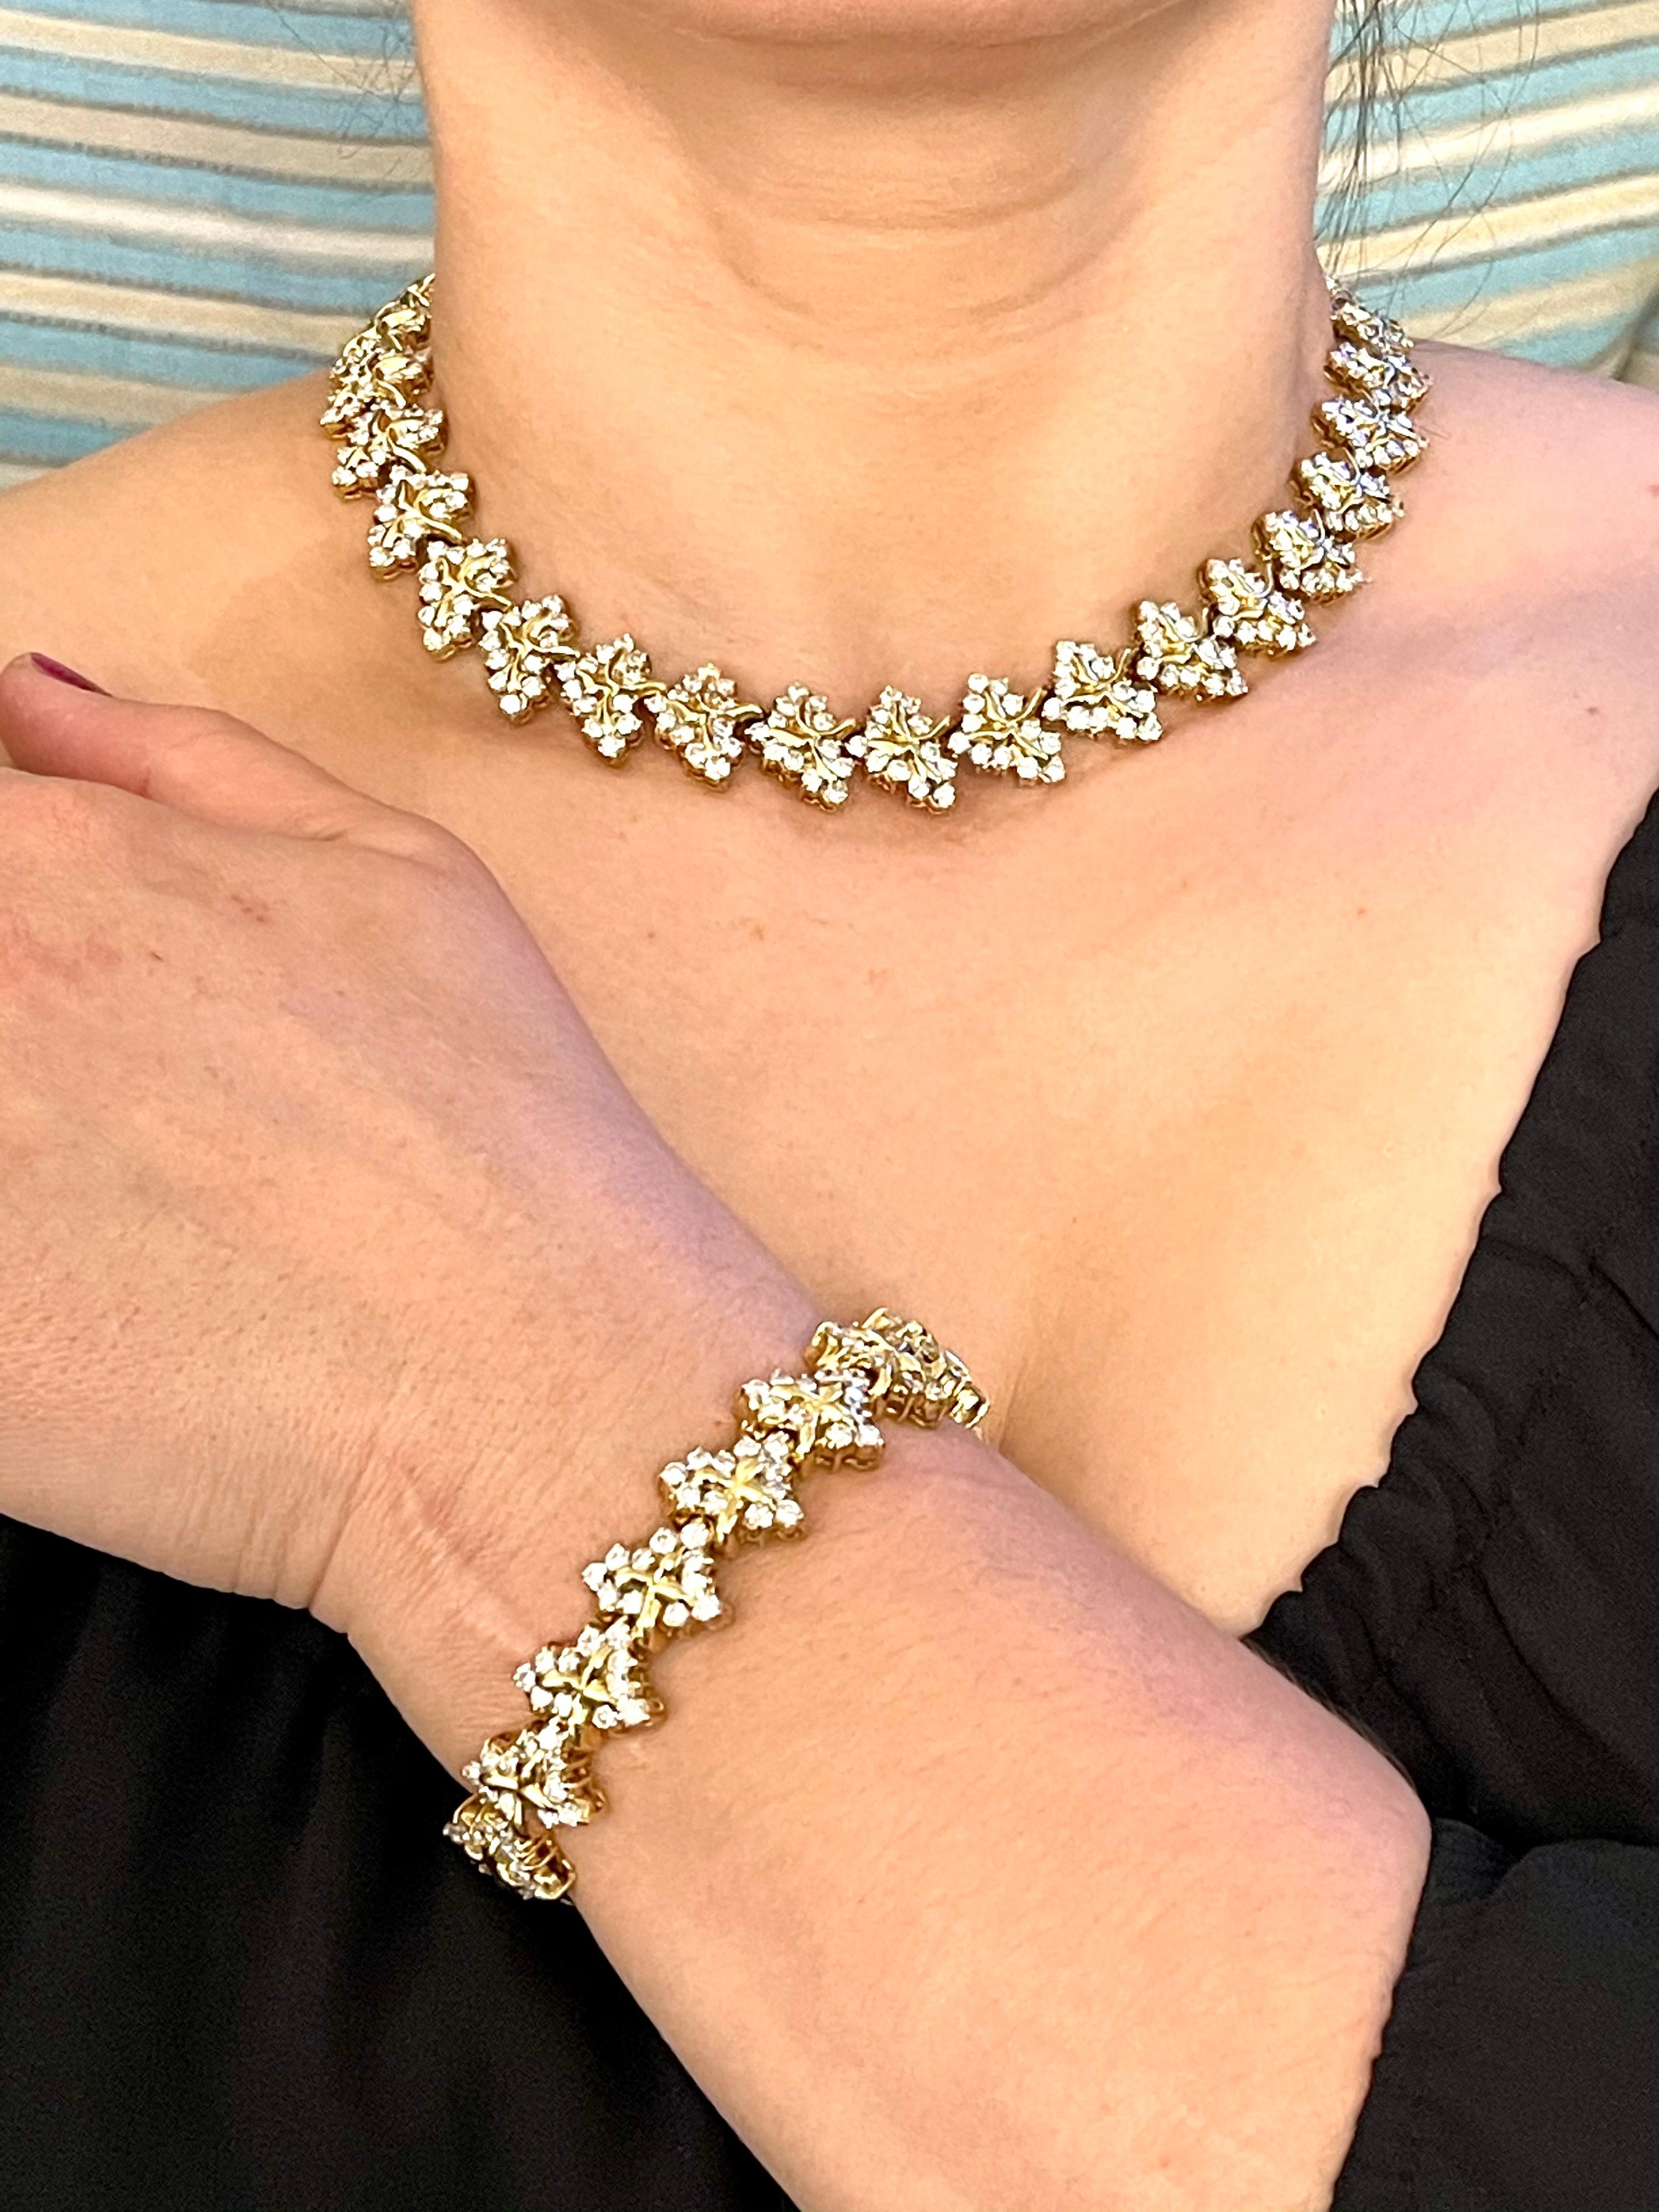 38 Carat Diamond Necklace and Bracelet 180 Grams 14 Karat Gold Bridal Suite For Sale 3